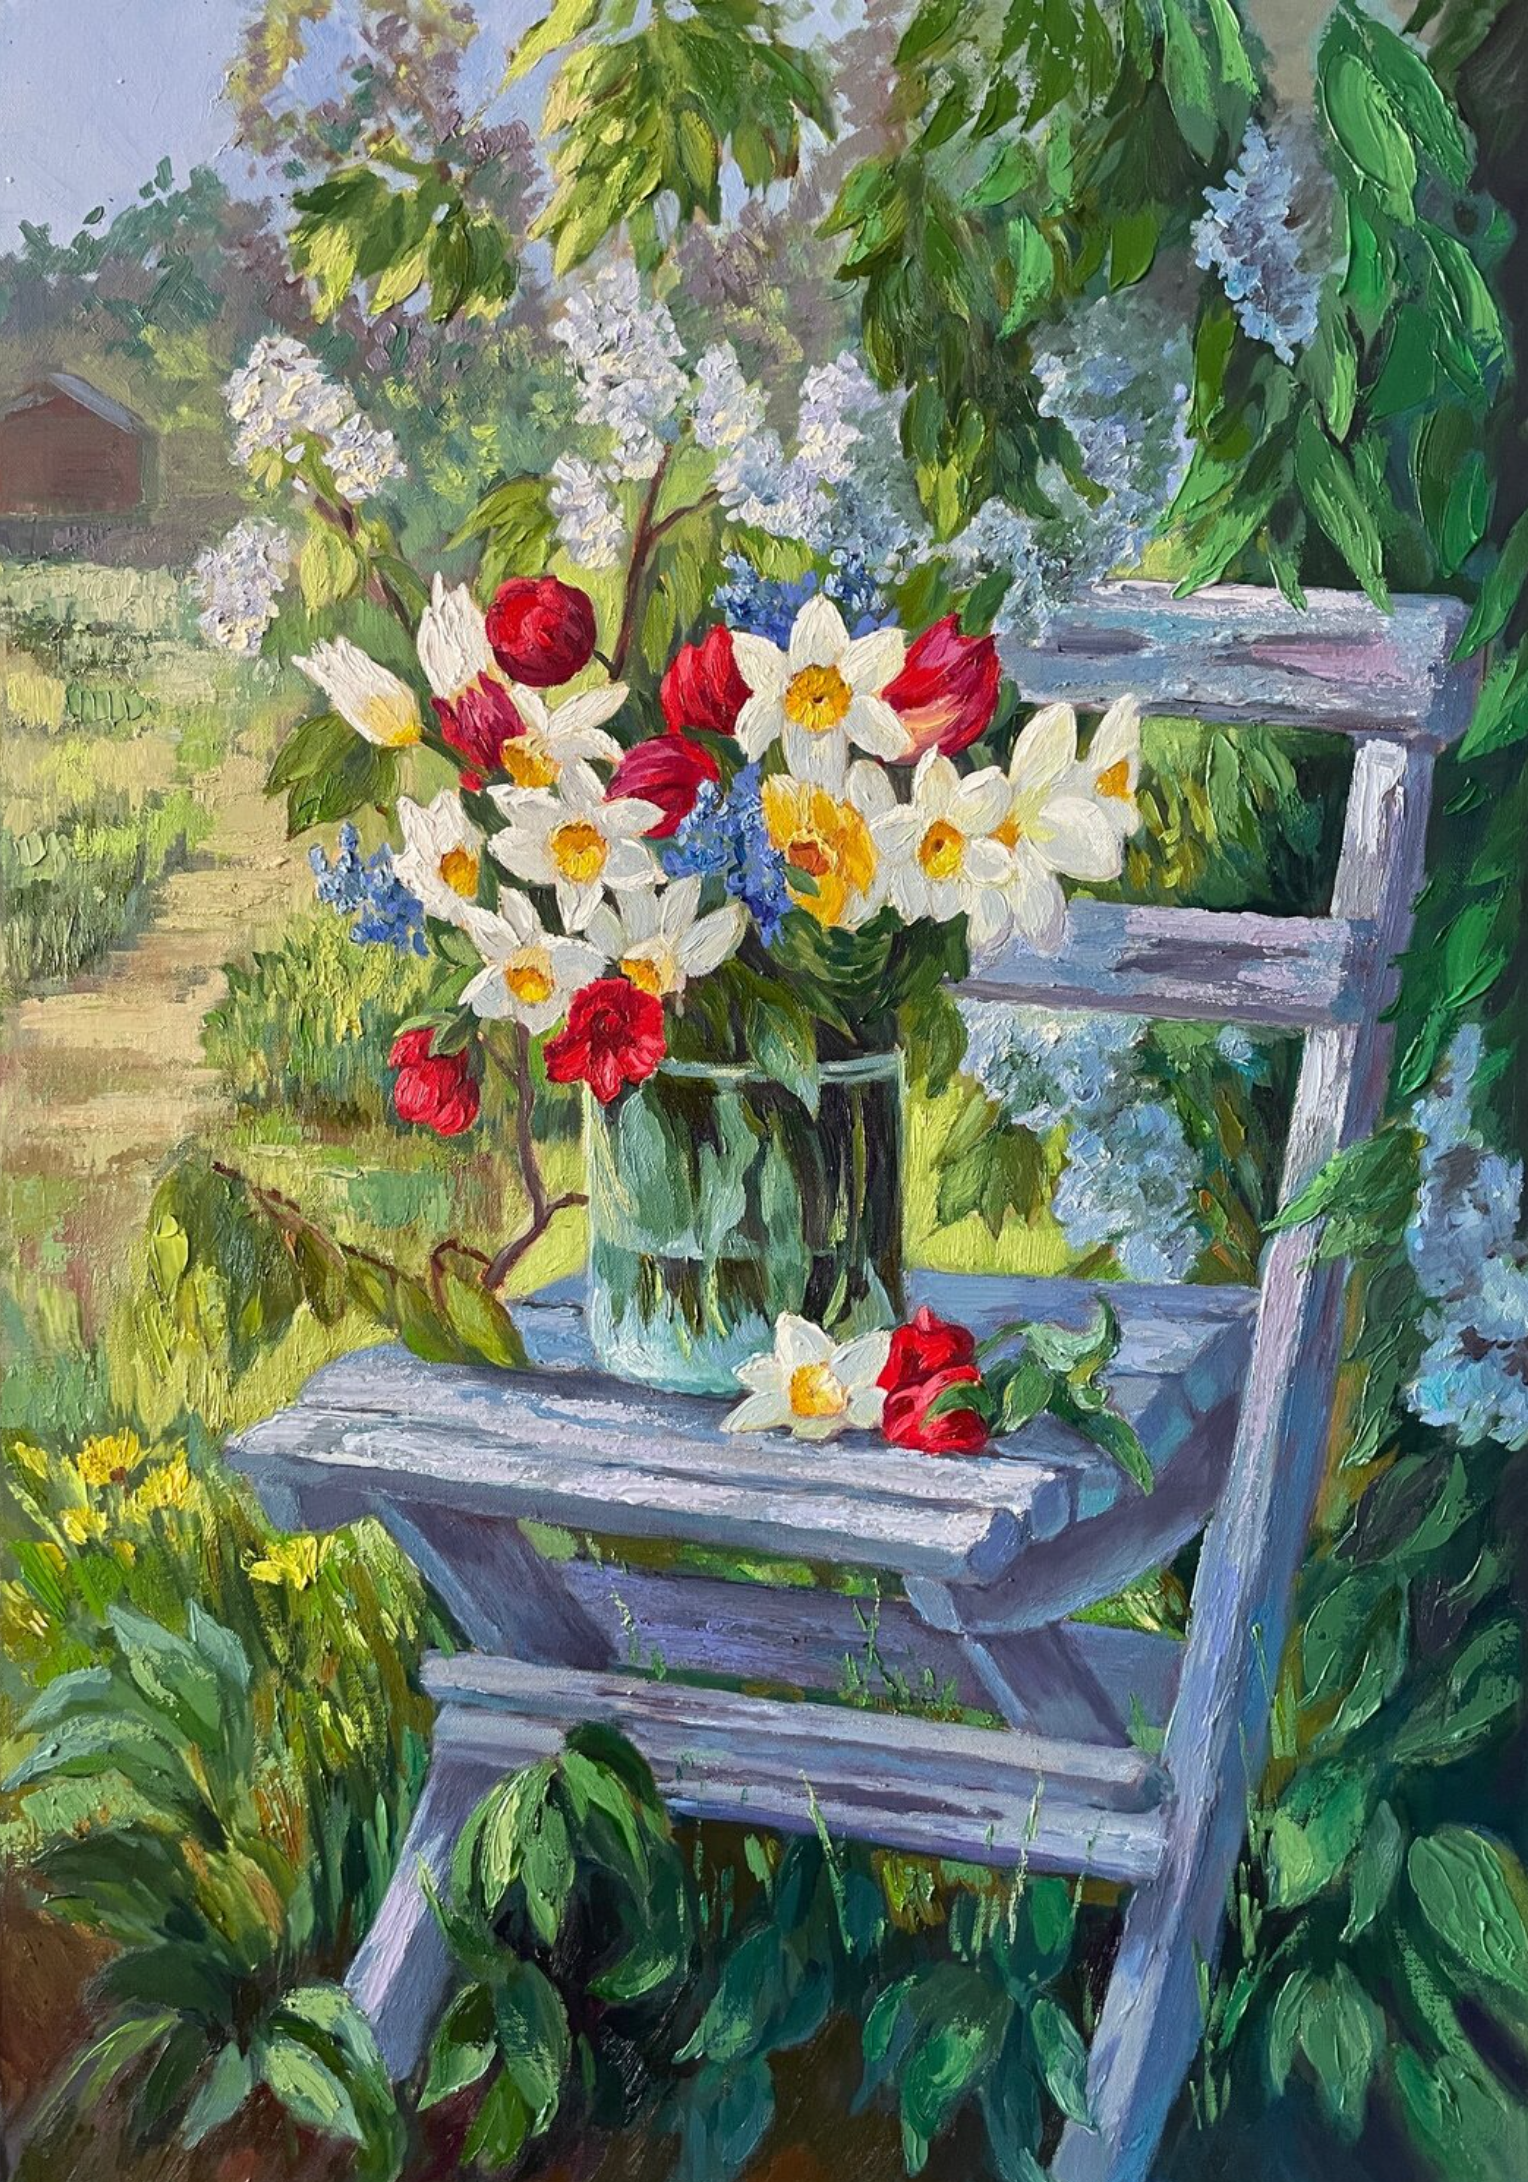 Le "Bouquet de printemps" d'Anna Reznikova montre, une peinture colorée, un magnifique jardin.  Une composition florale, avec des fleurs d'été multicolores.